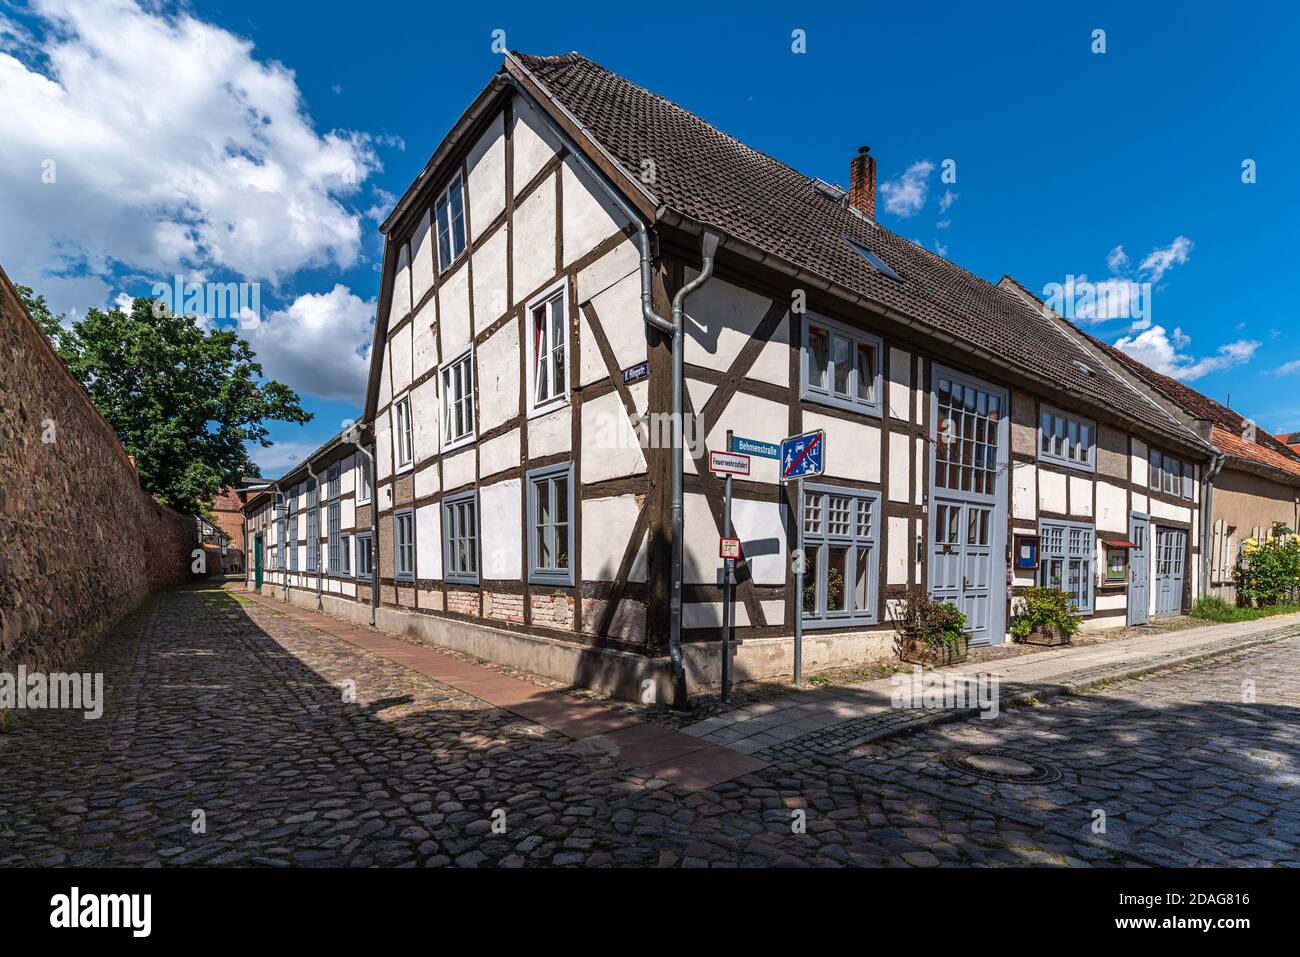 Neubrandenburg, Stadtansicht, altes Fachwerkhaus Stock Photo